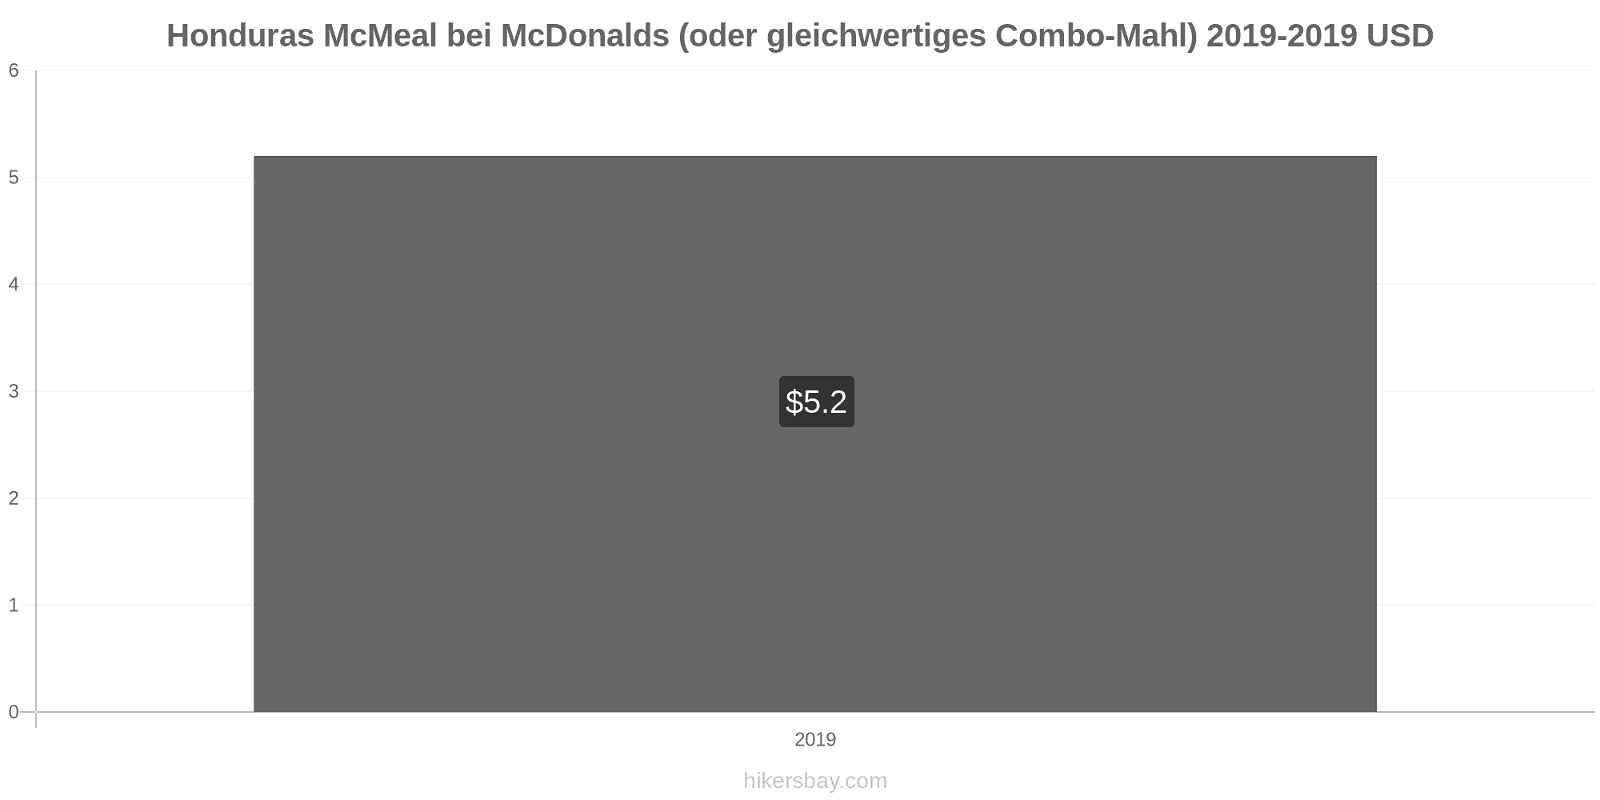 Honduras Preisänderungen McMeal bei McDonalds (oder gleichwertige Combo Meal) hikersbay.com